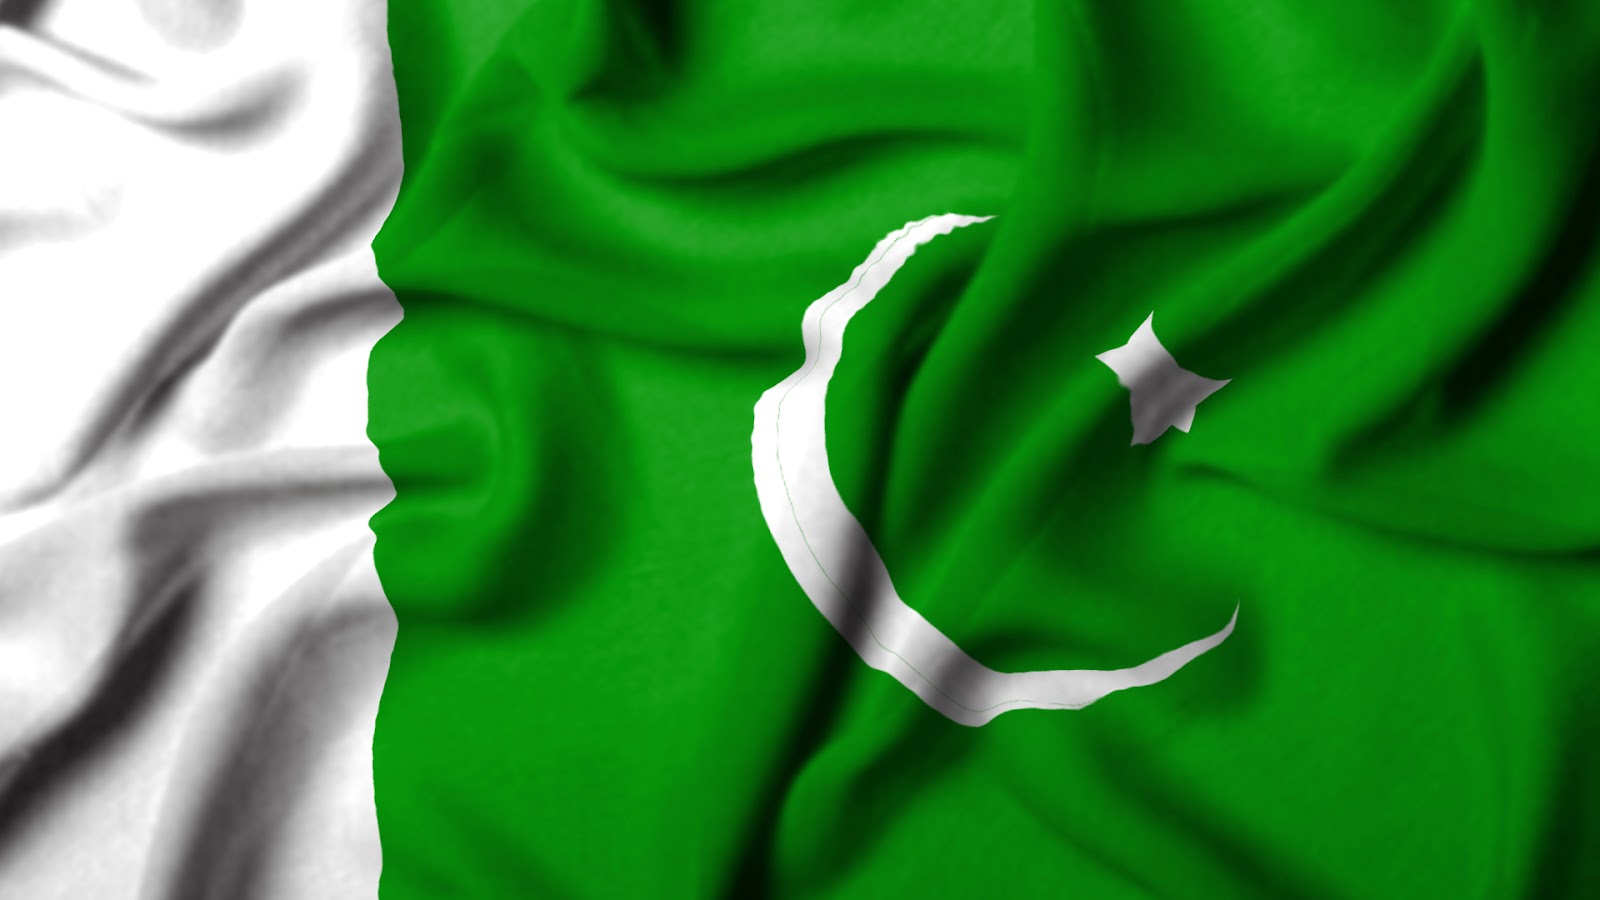 pakistan flag wallpaper,green,flag,jersey,textile,t shirt